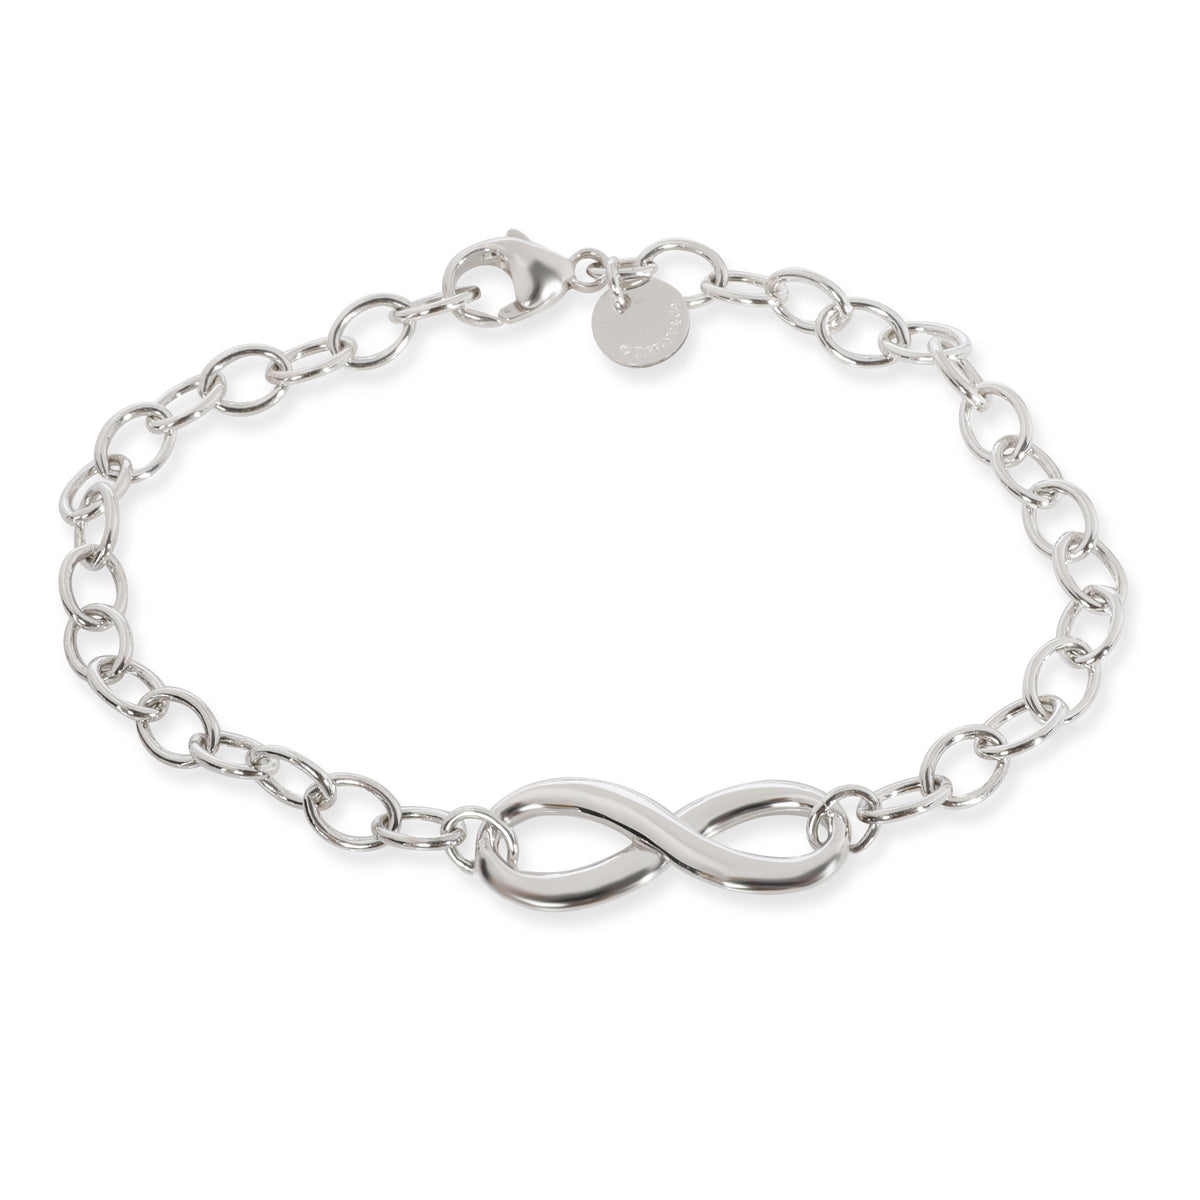 Tiffany & Co. Infinity Bracelet in  Sterling Silver